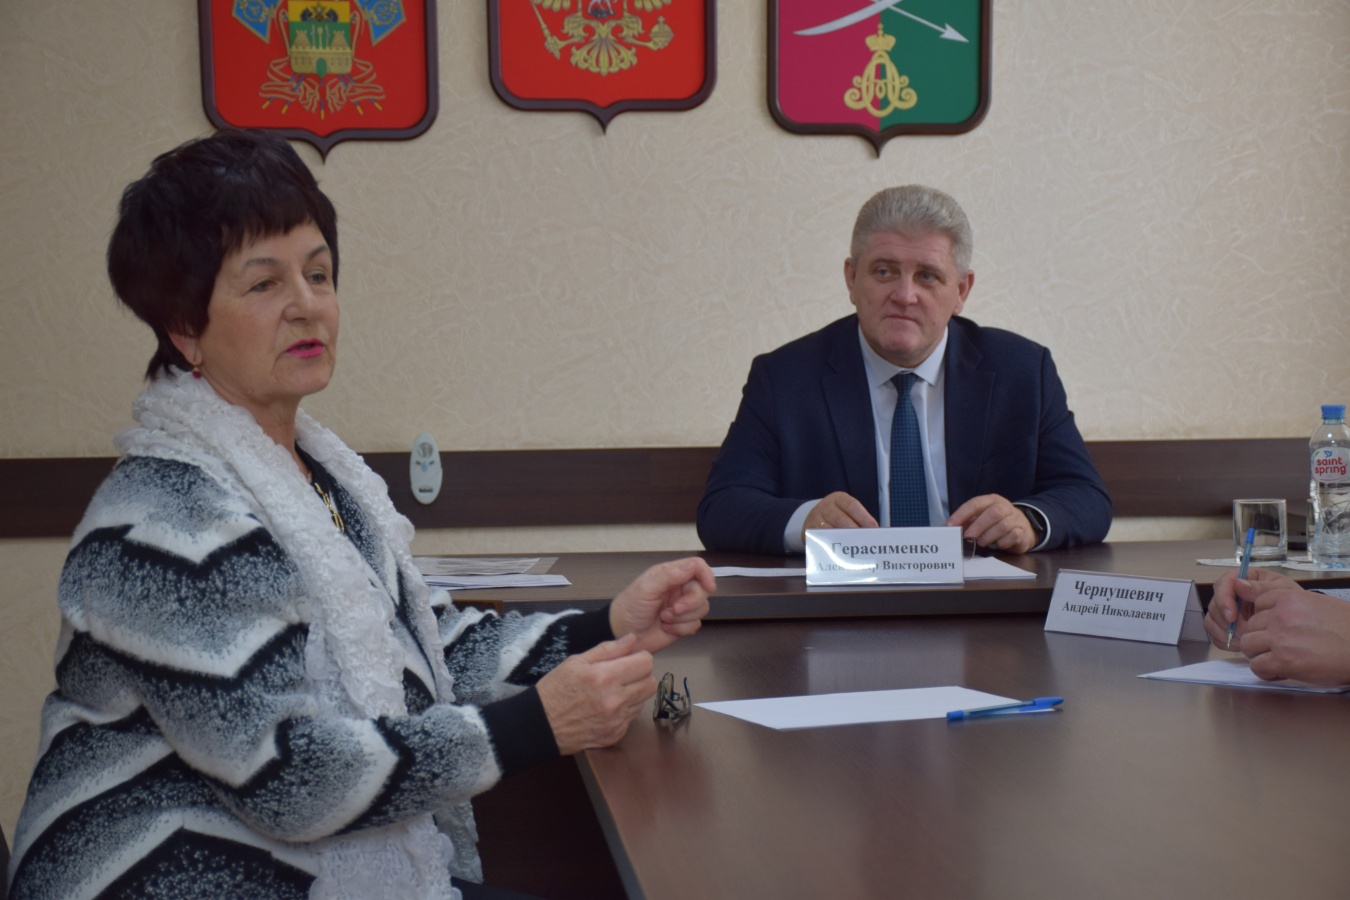 Встреча жителей с главой района состоялась в Новоминской 8 февраля